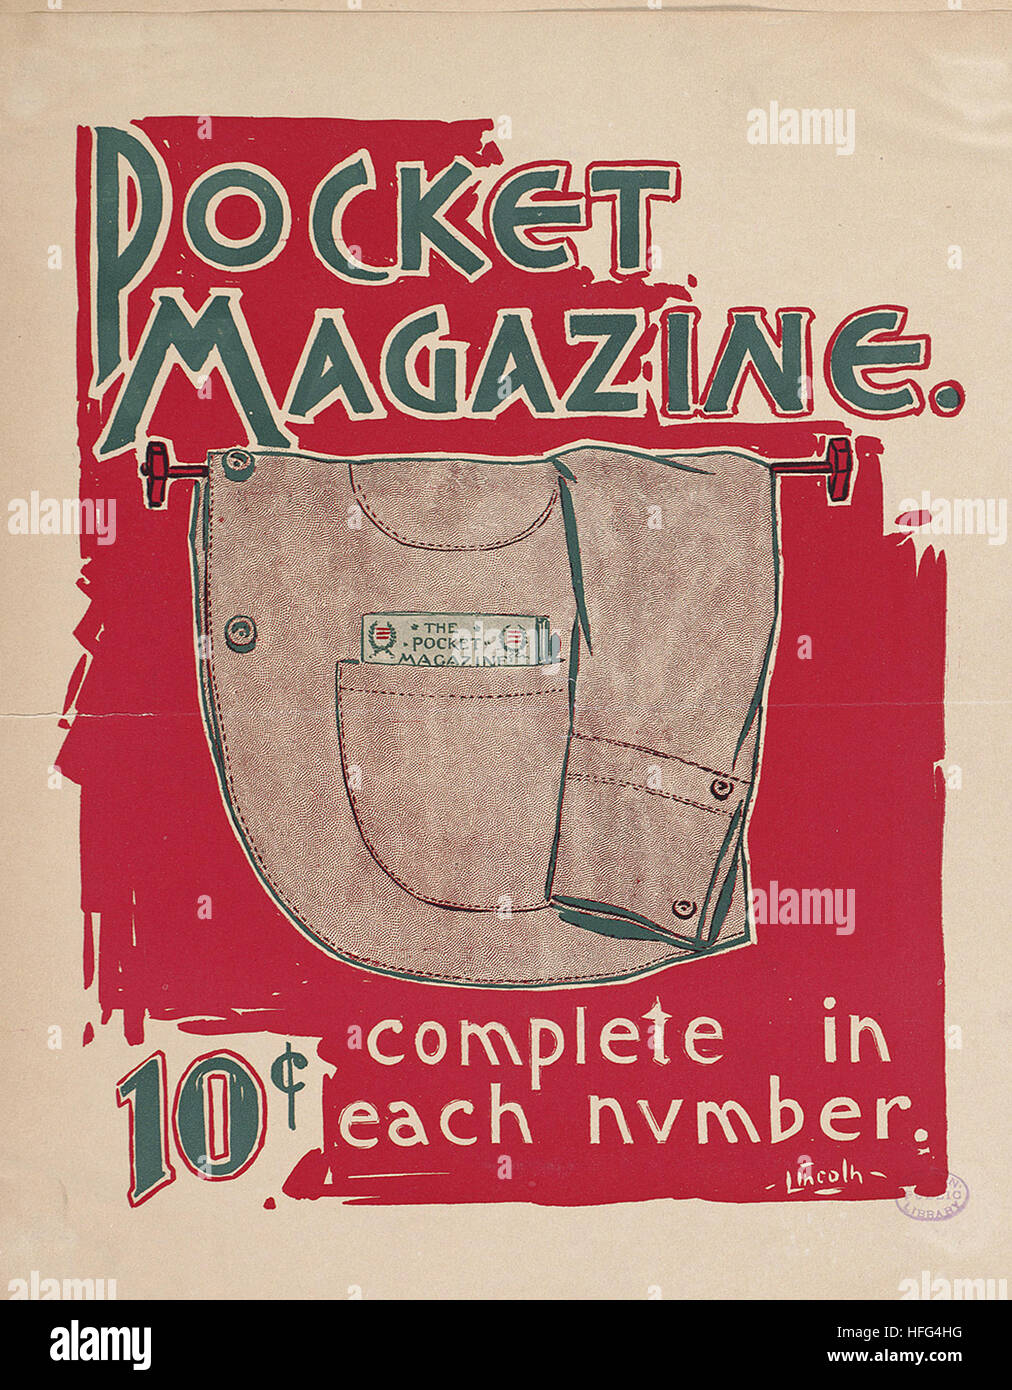 Pocket magazine complet dans chaque numéro. Banque D'Images